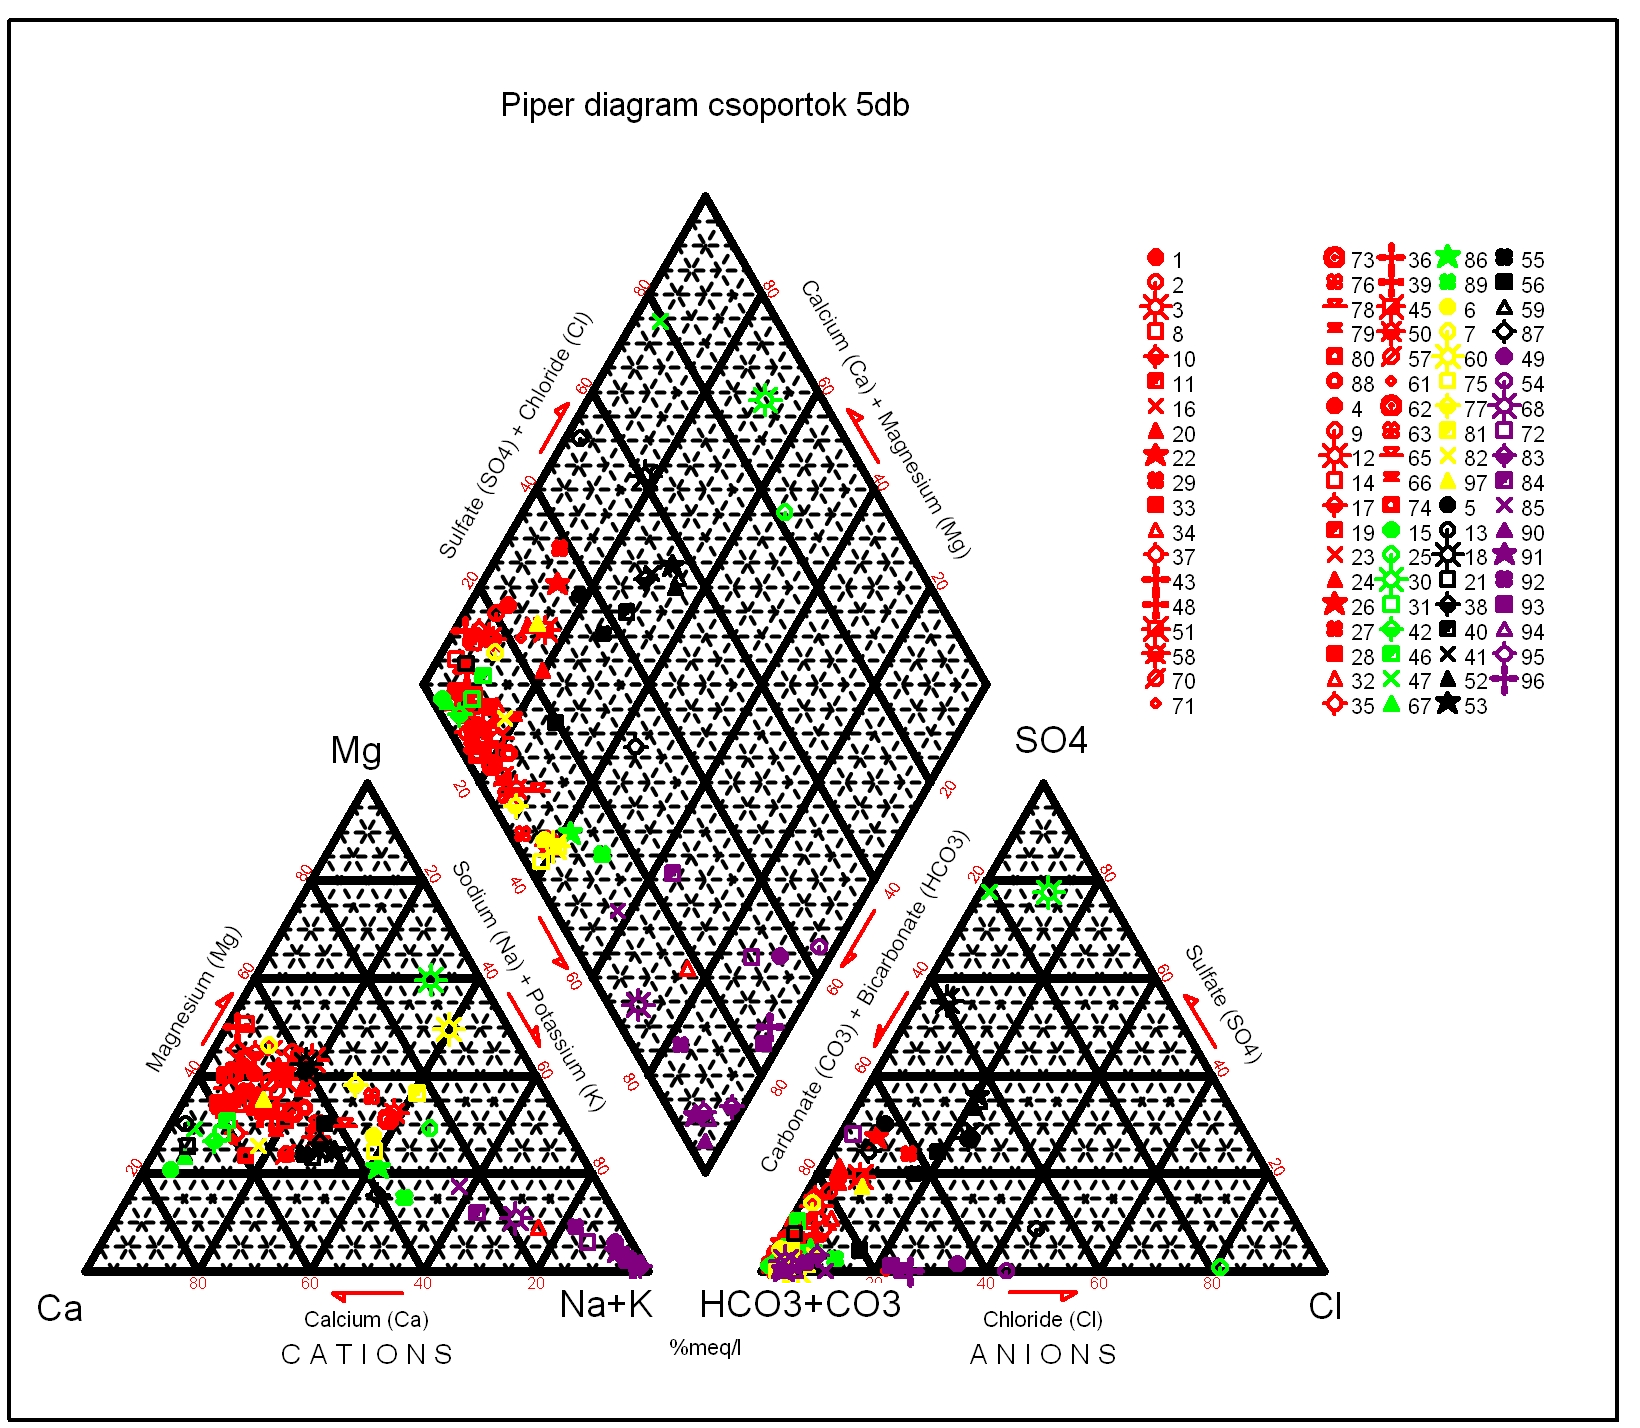 5. Adatok értékelése Vízkémia Vizek vízkémiai besorolása eredménye a Piperdiagram rámutat az összetételbeli